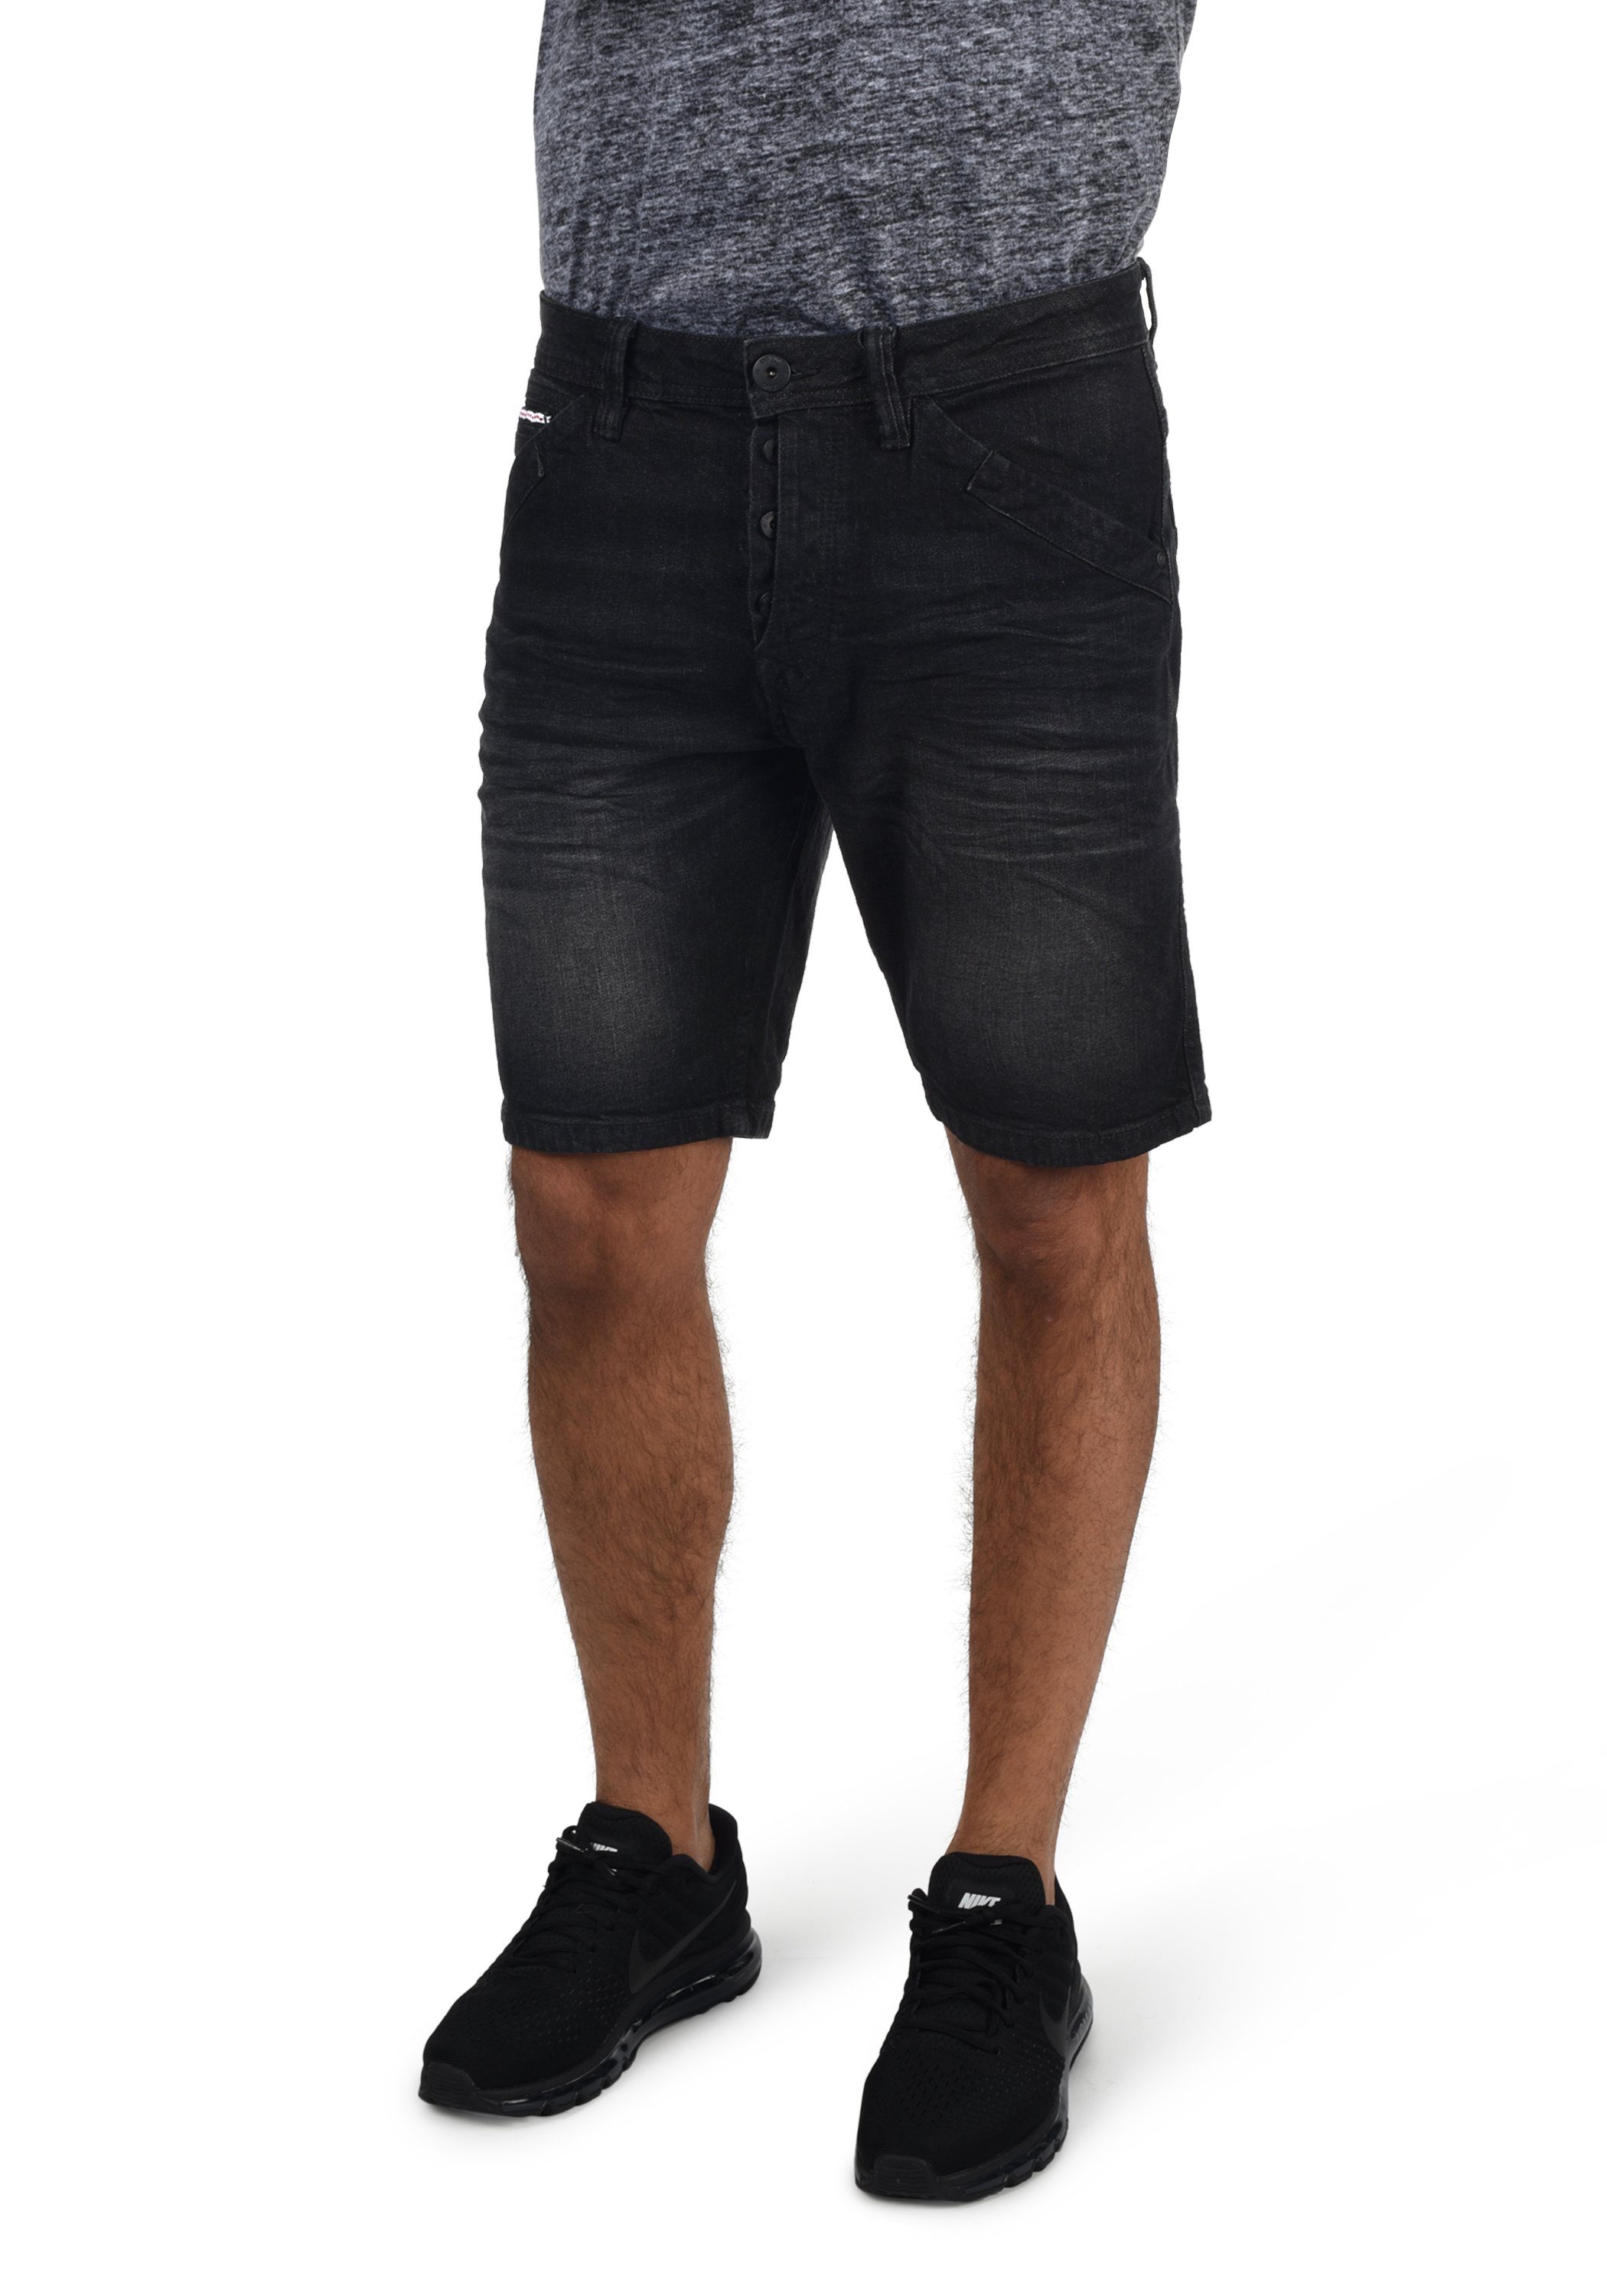 - Shorts (999) Black IDAlessio 70191MM Indicode - Jeansshorts